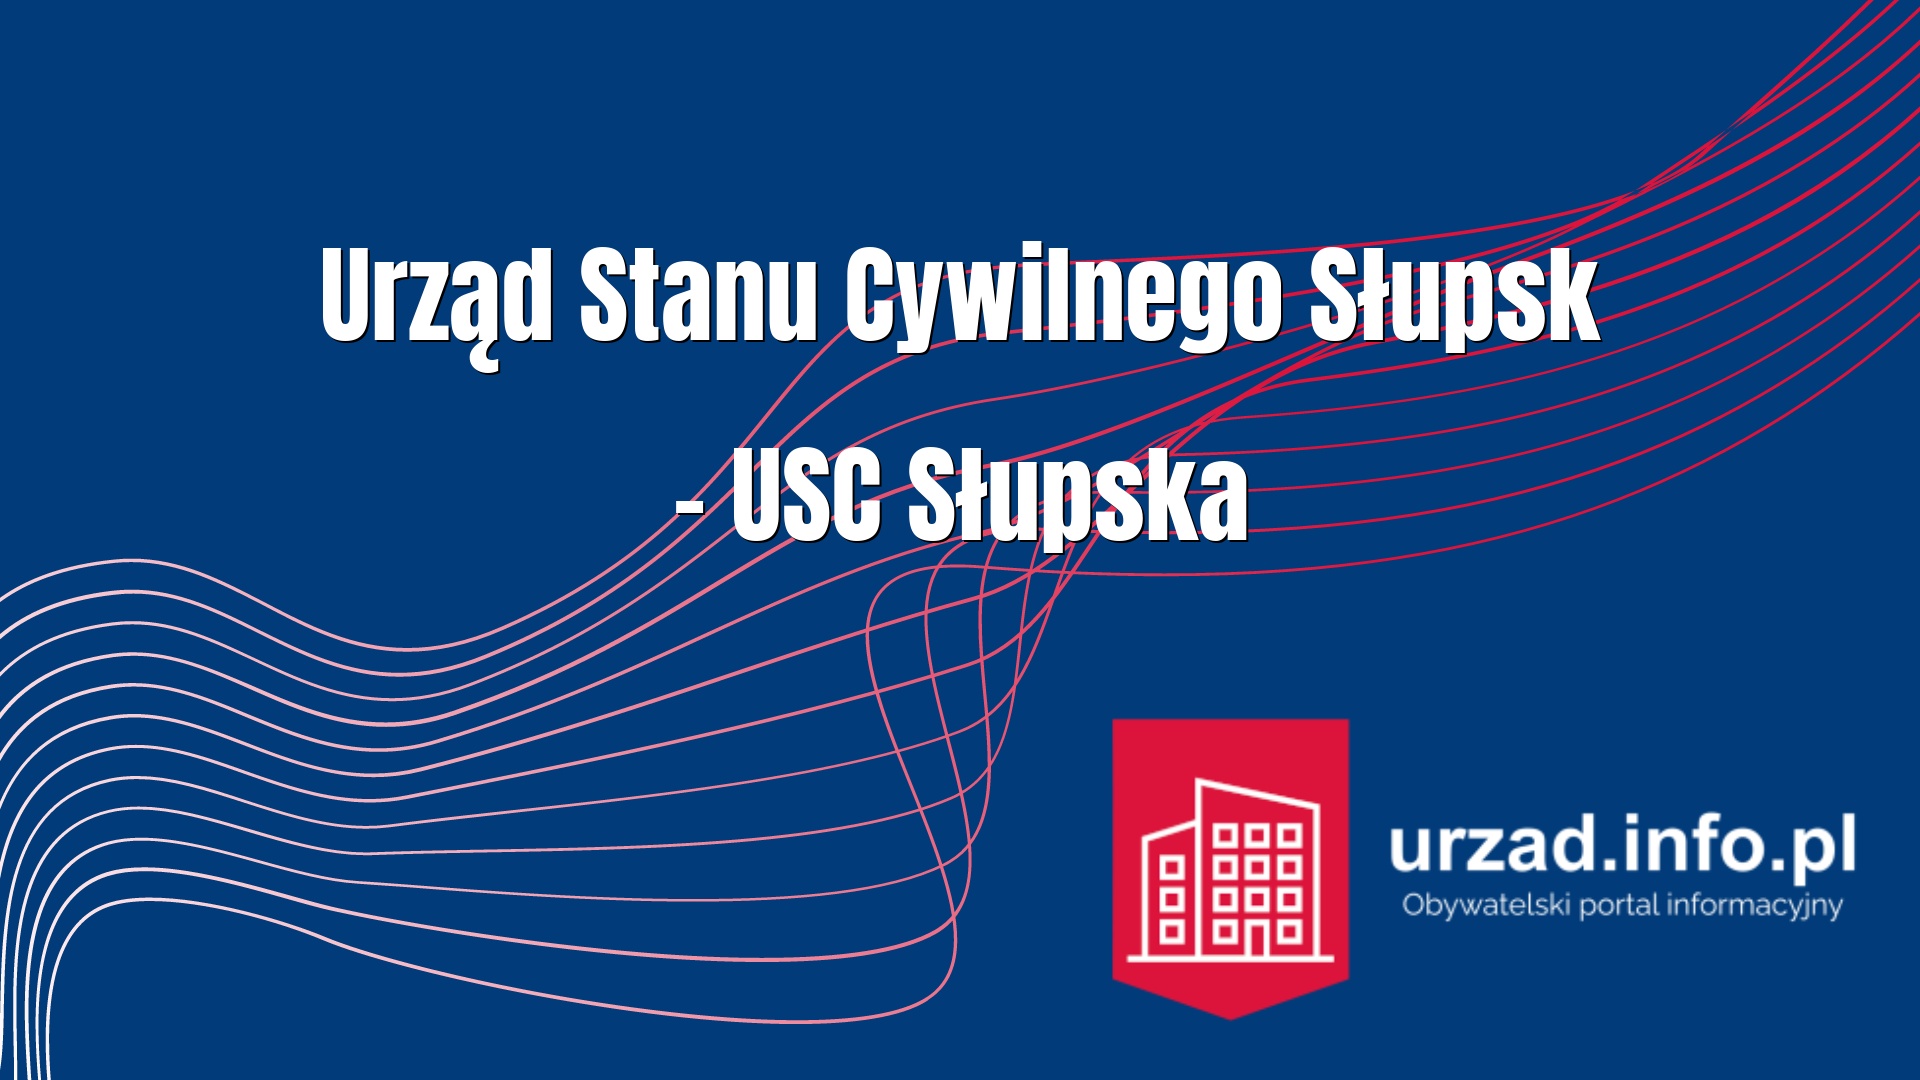 Urząd Stanu Cywilnego Słupsk – USC Słupska